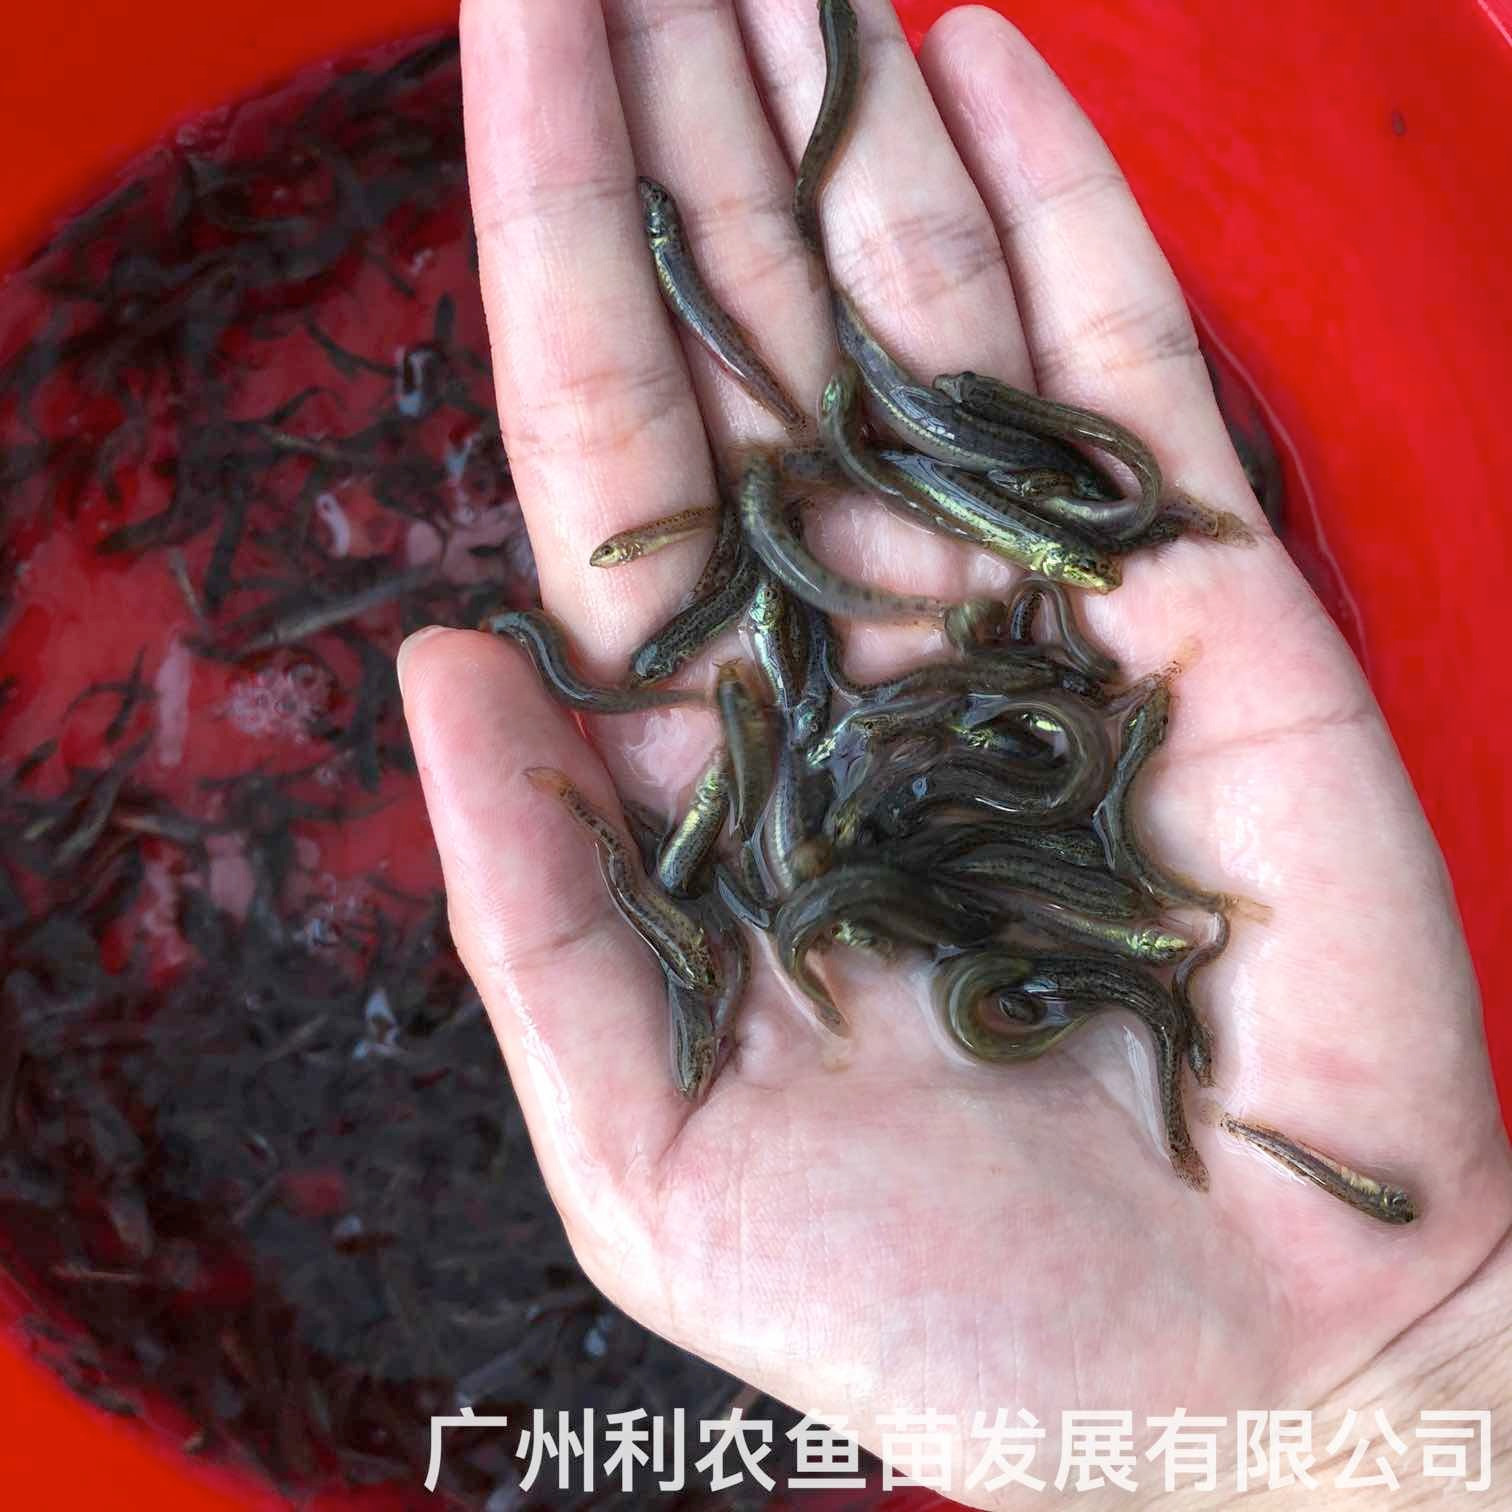 江西抚州台湾泥鳅苗出售出售价格江西鹰潭泥鳅鱼苗批发养殖基地